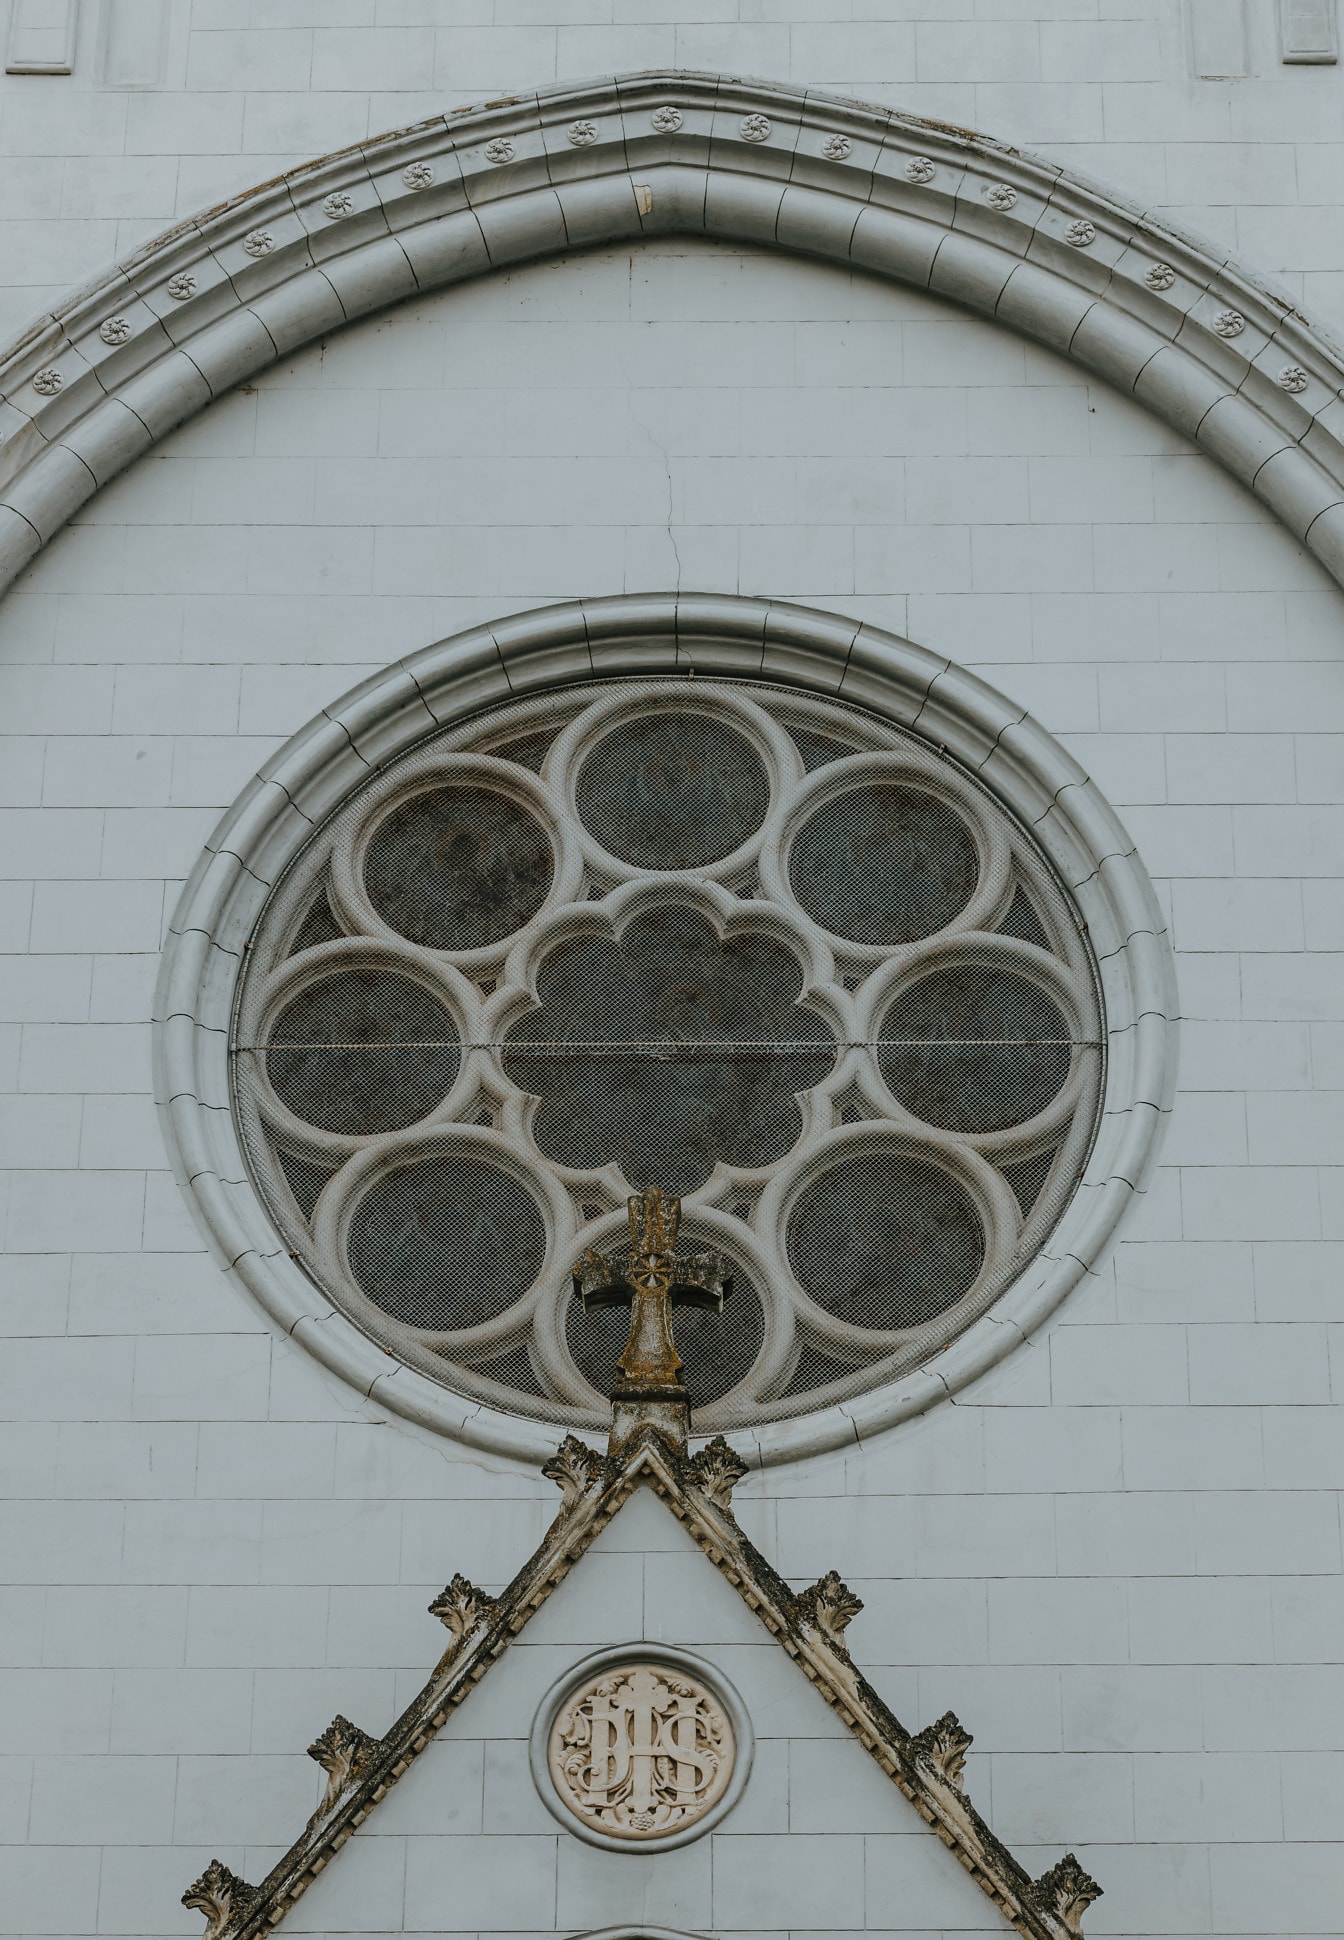 Exteriorul catedralei gotice cu fereastră rotundă cu detalii ornamentale